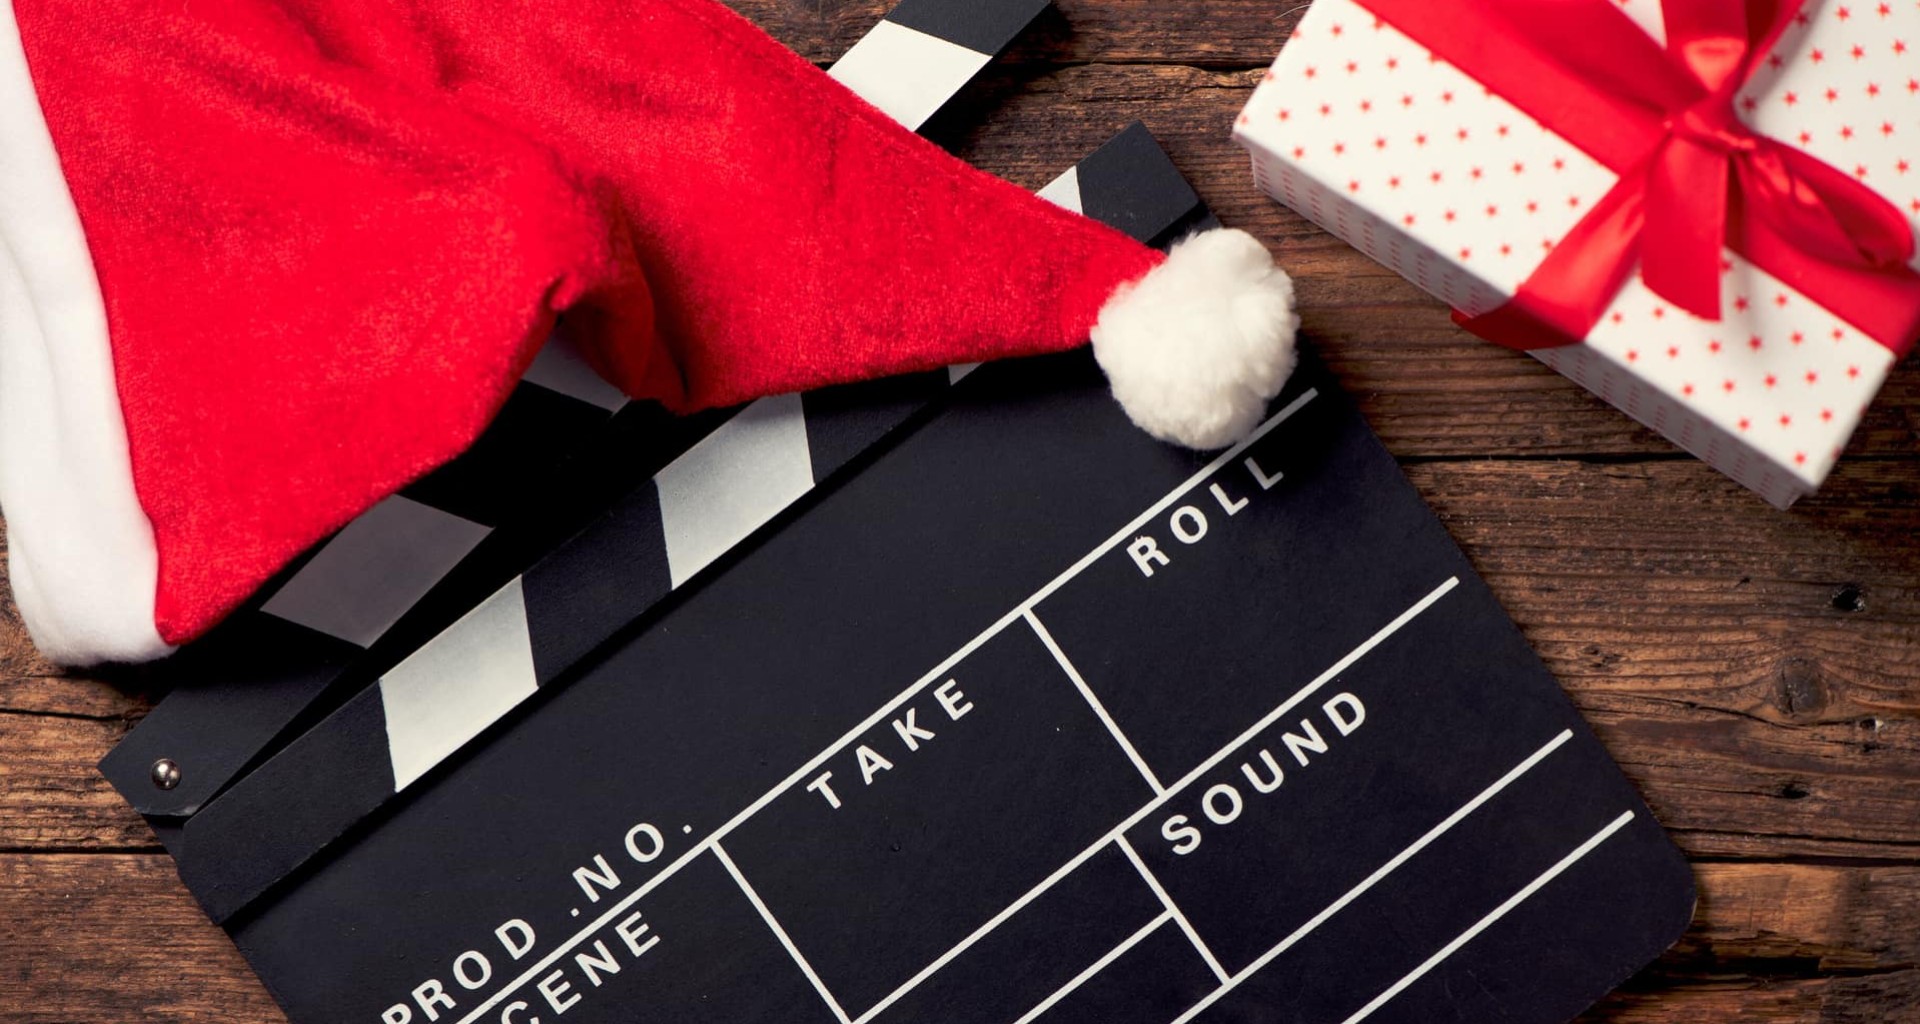 10 películas alternativas para ver en navidad según experto Tec